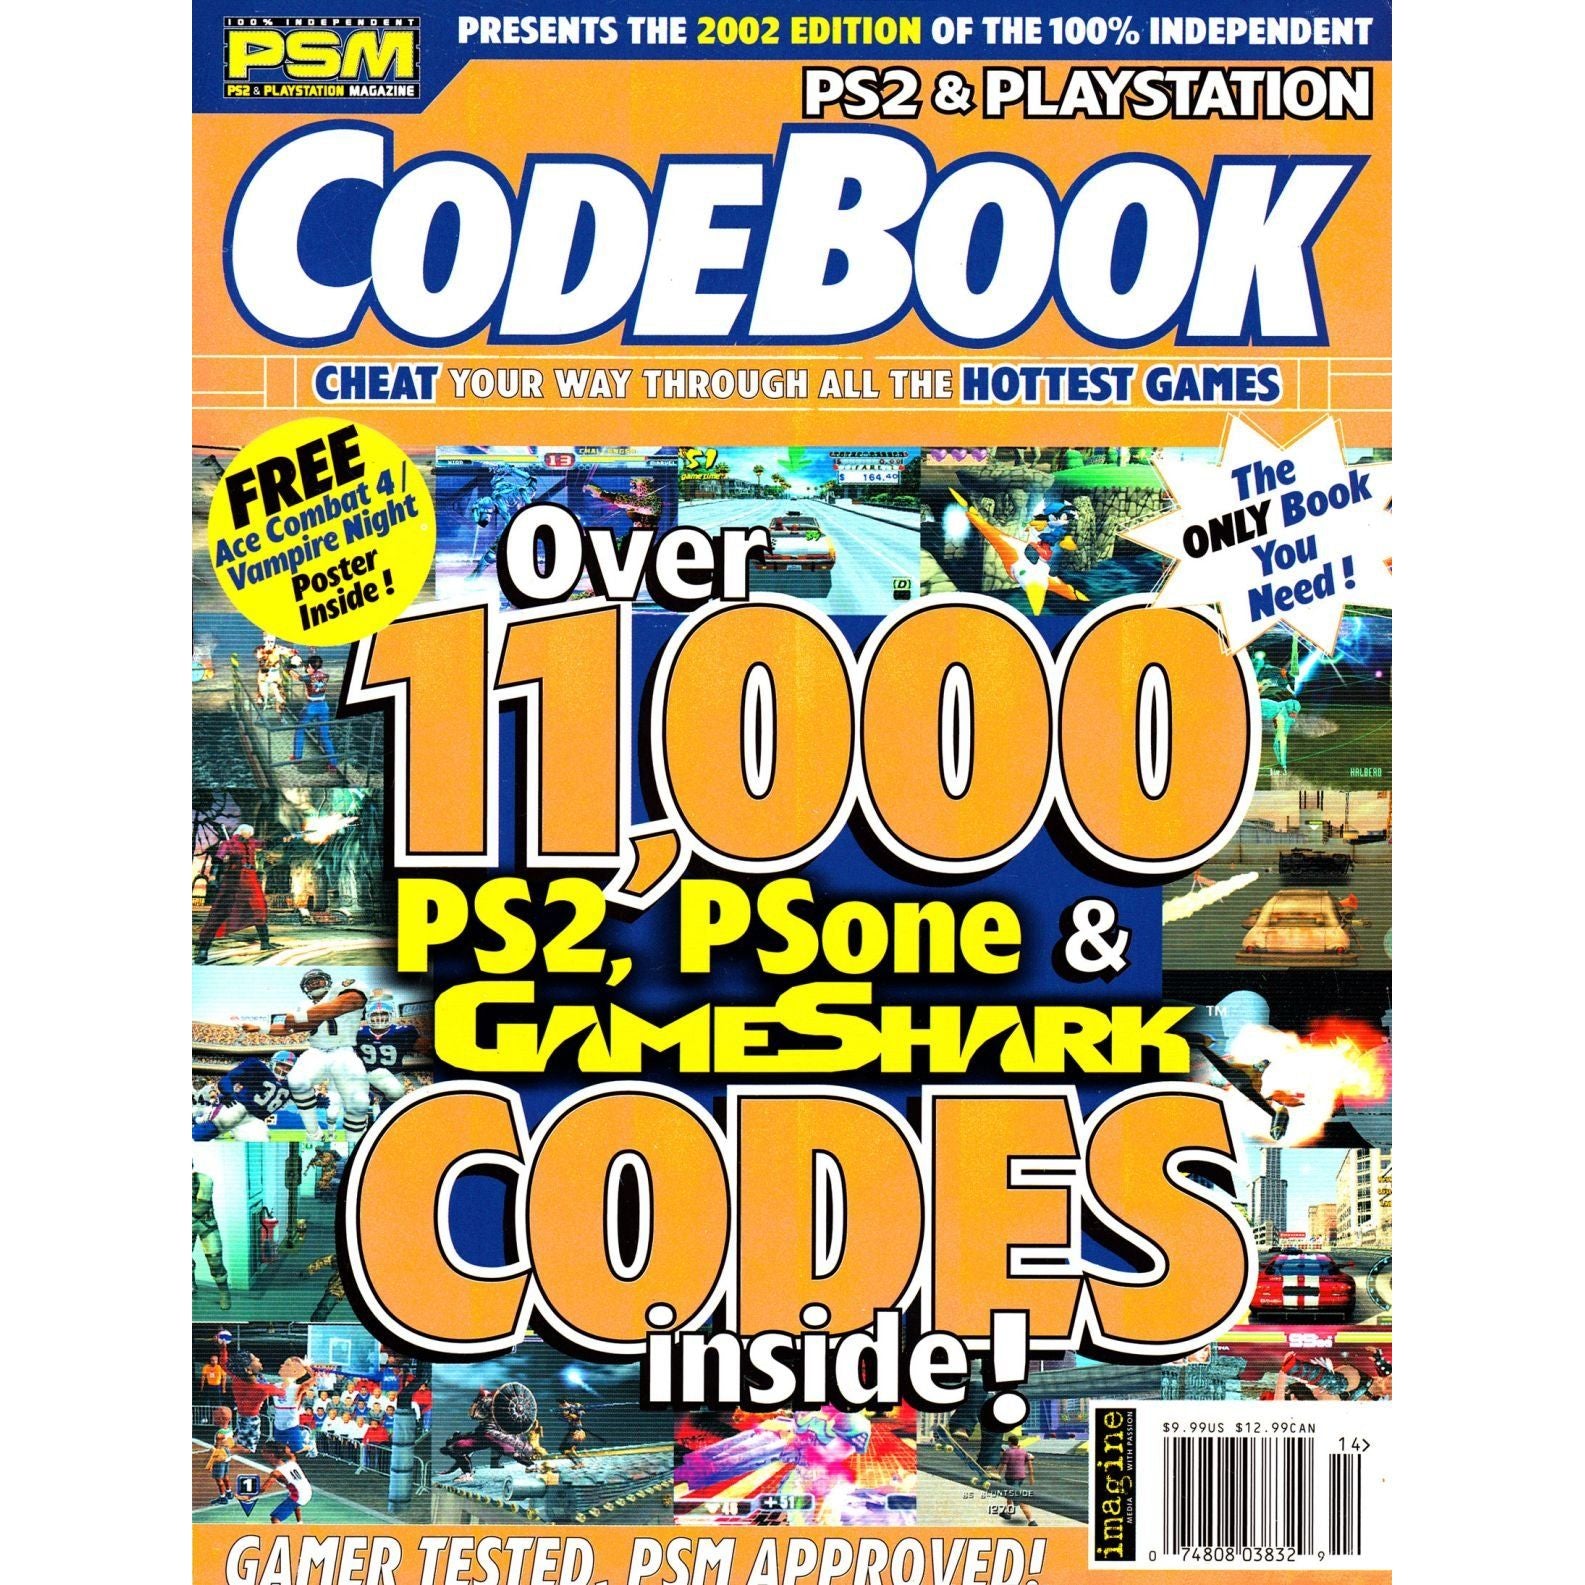 PSM Magazine présente PS2 et PlayStation CodeBook 2002